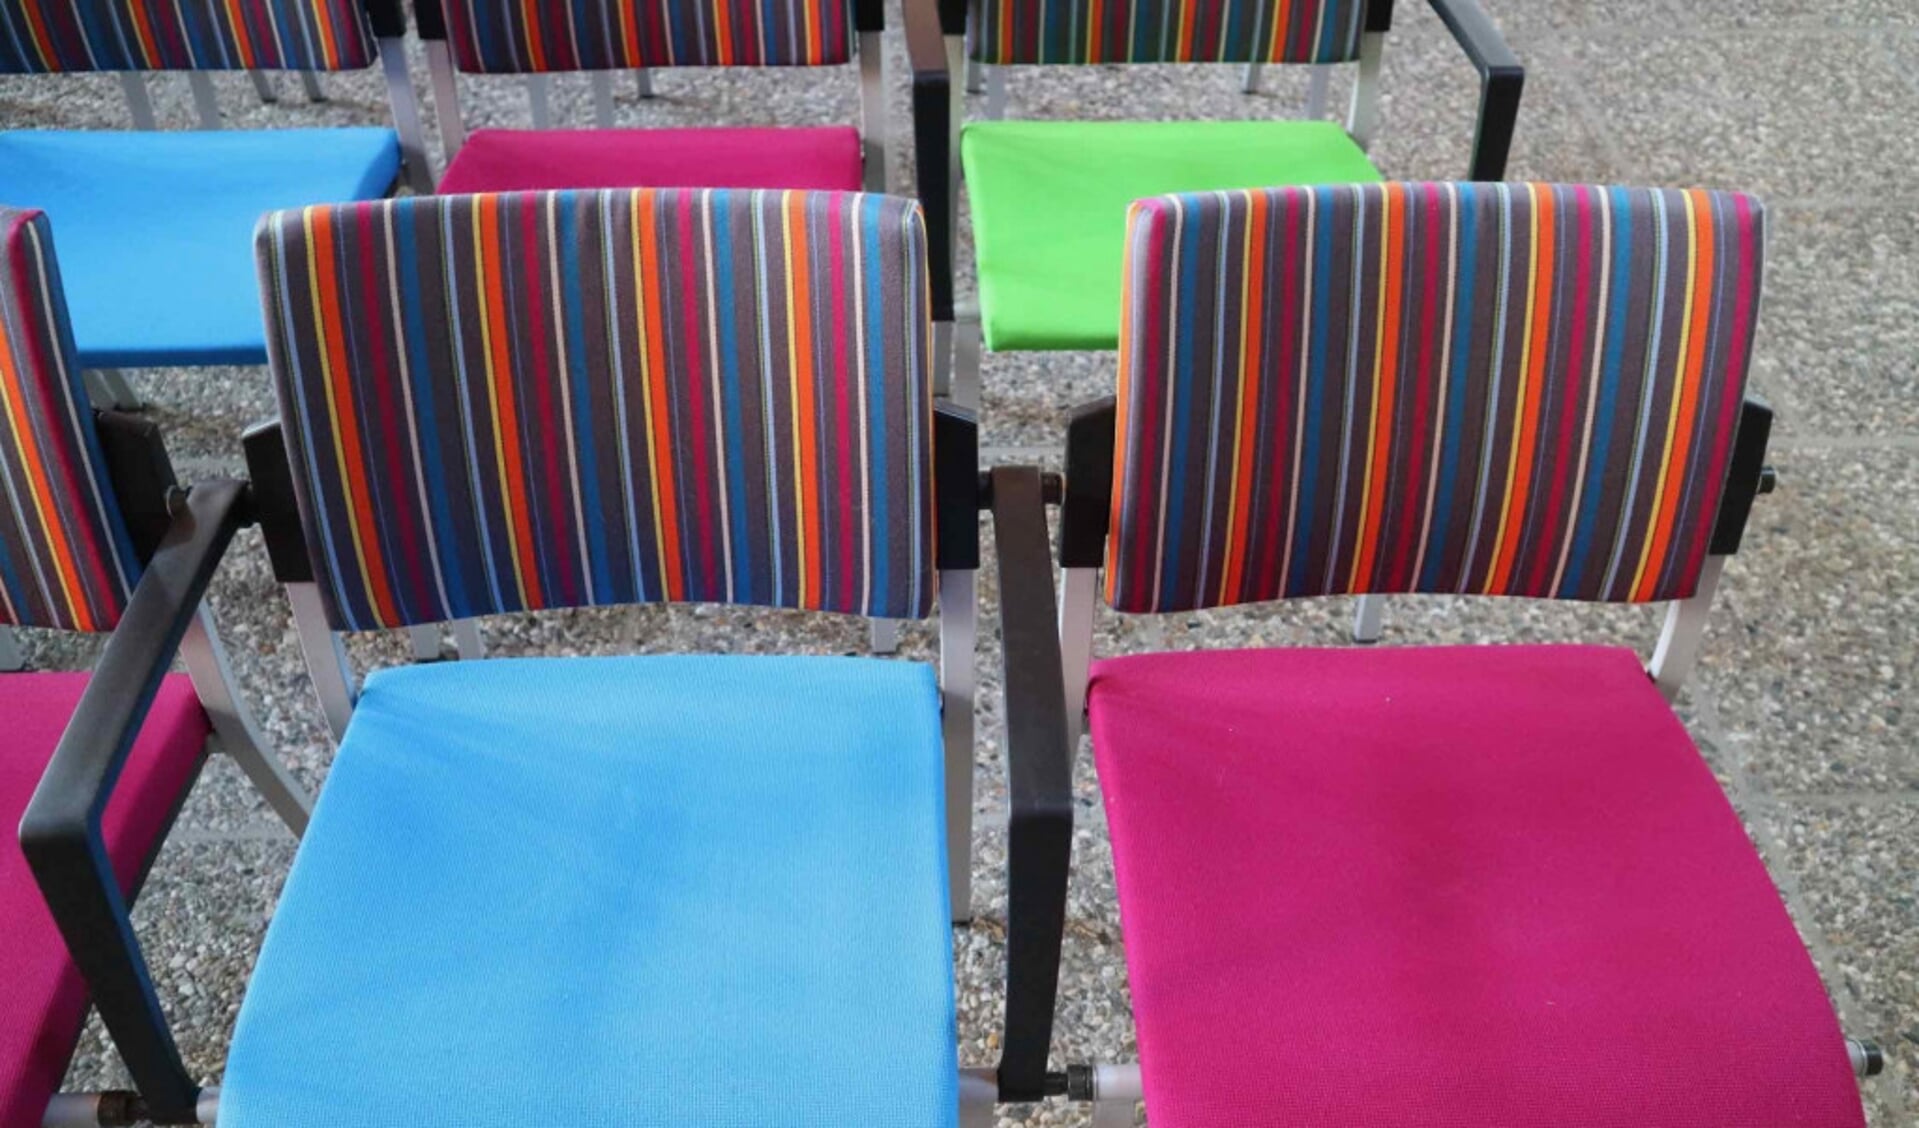  Ook de gekleurde stoelen uit de kerkzaal zijn te koop.